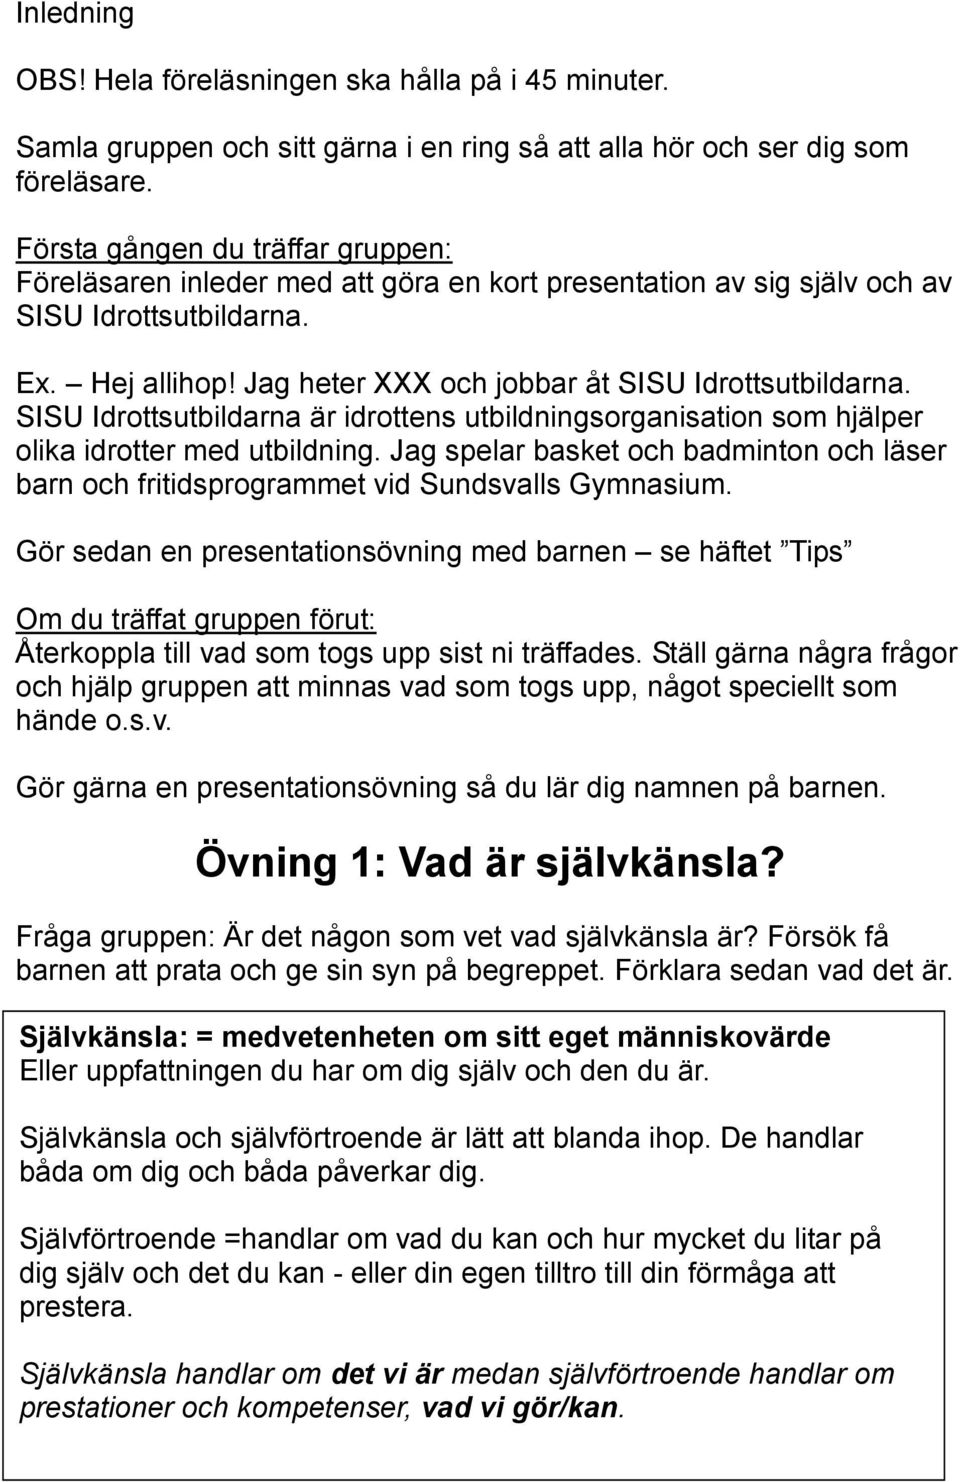 SISU Idrottsutbildarna är idrottens utbildningsorganisation som hjälper olika idrotter med utbildning. Jag spelar basket och badminton och läser barn och fritidsprogrammet vid Sundsvalls Gymnasium.